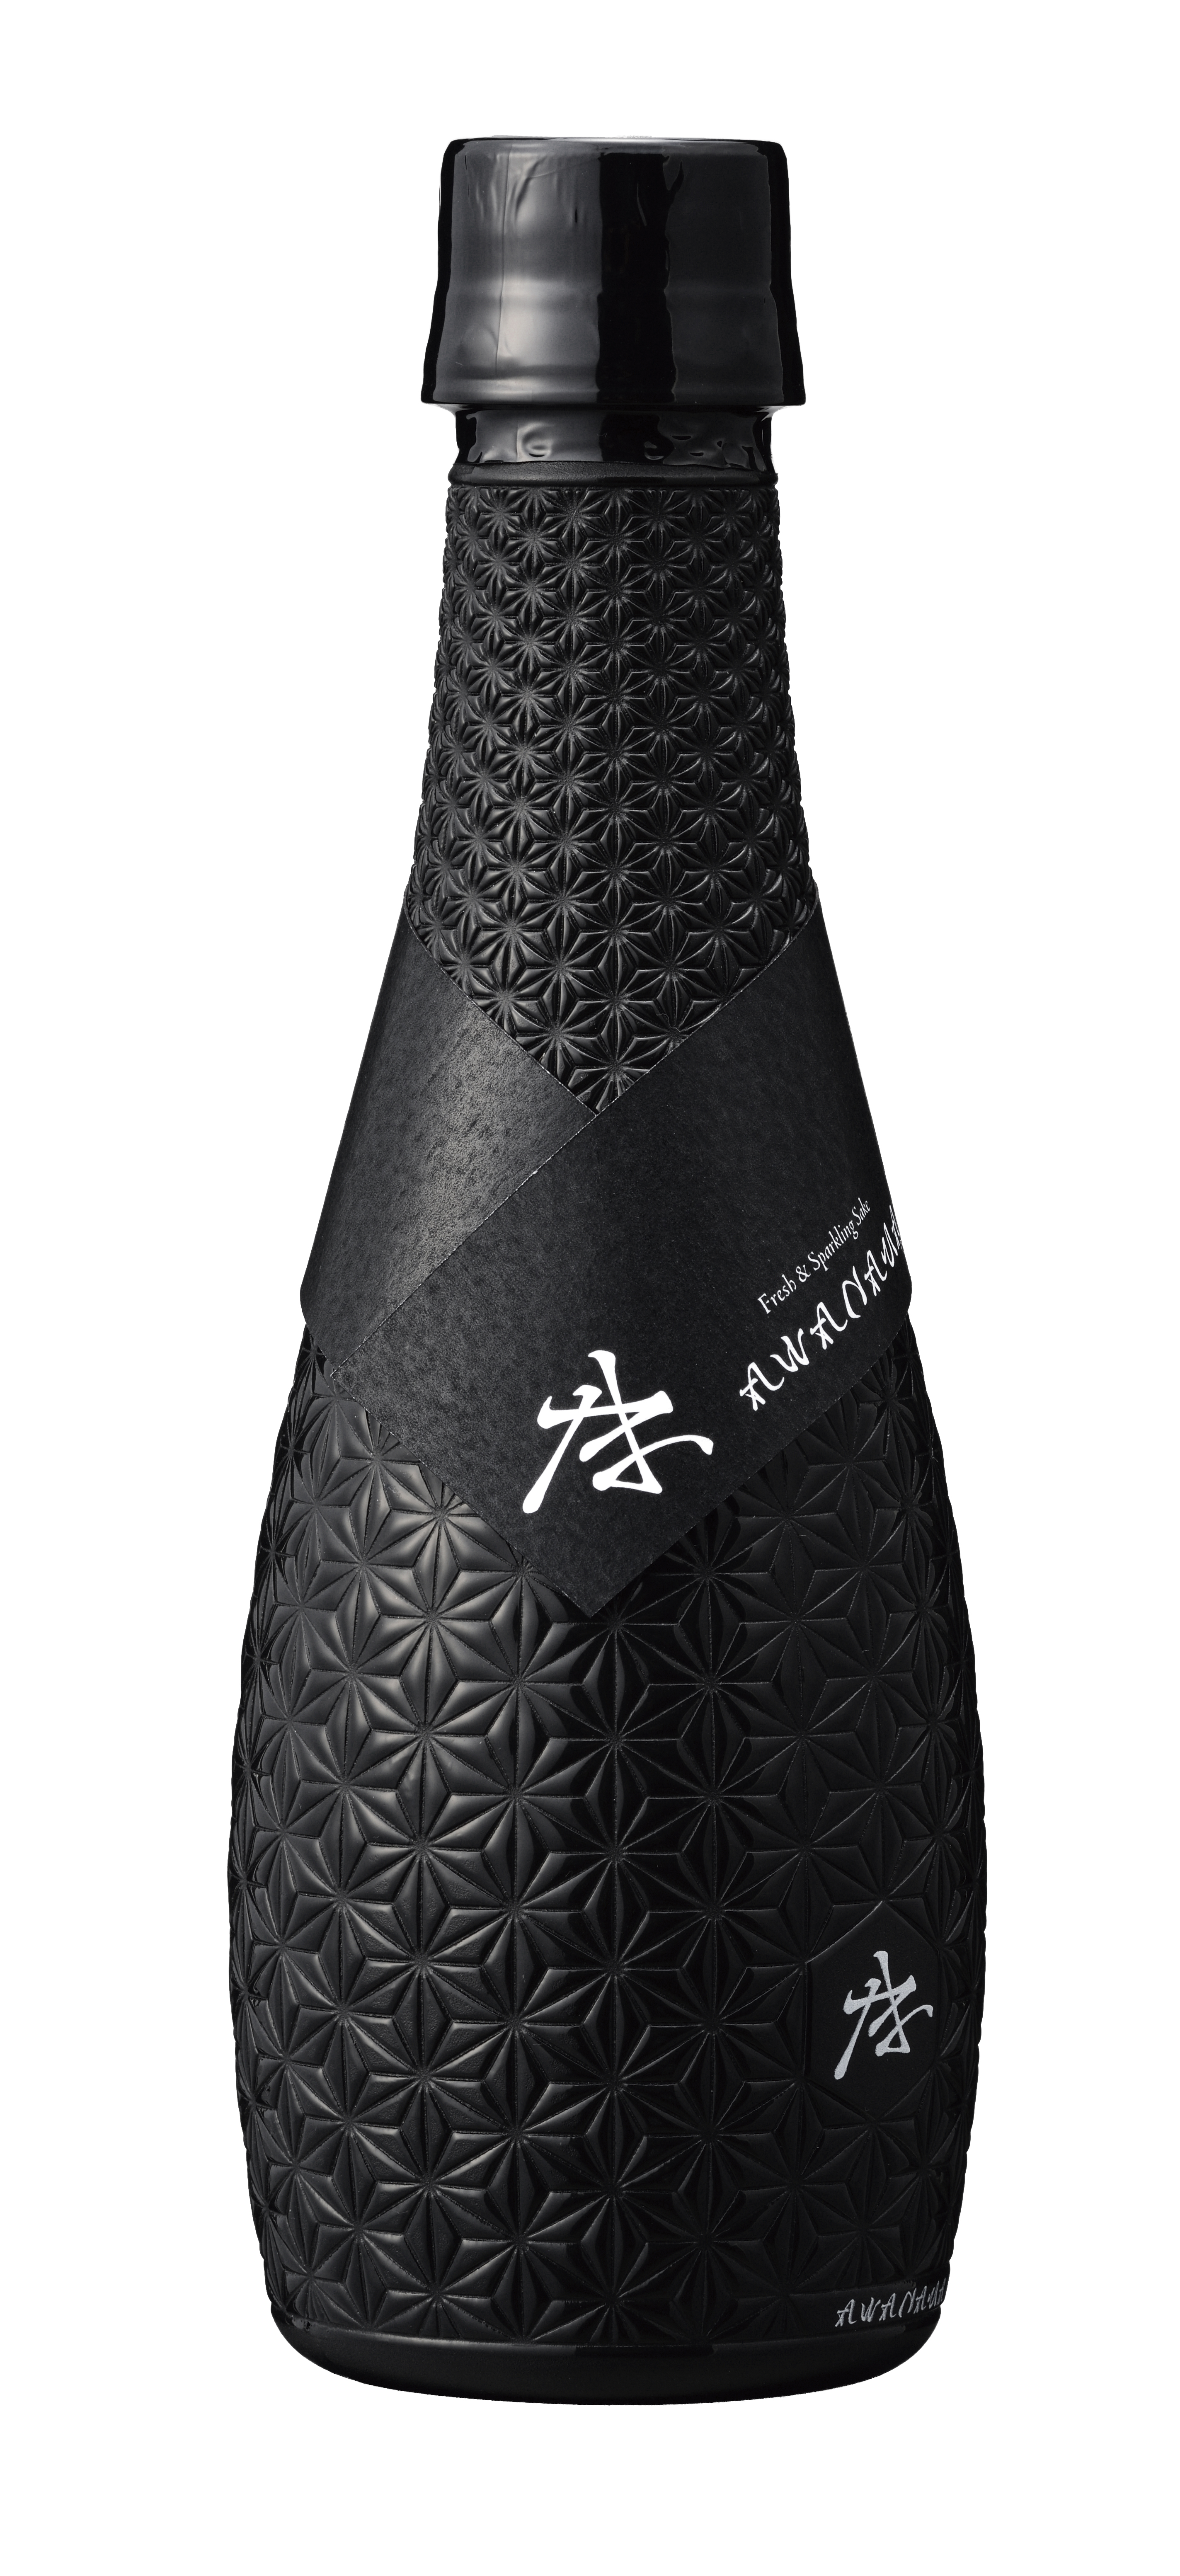 遮光性やバリア性に優れたpetボトルが日本酒の生酒用に採用 ニュース Dnp 大日本印刷